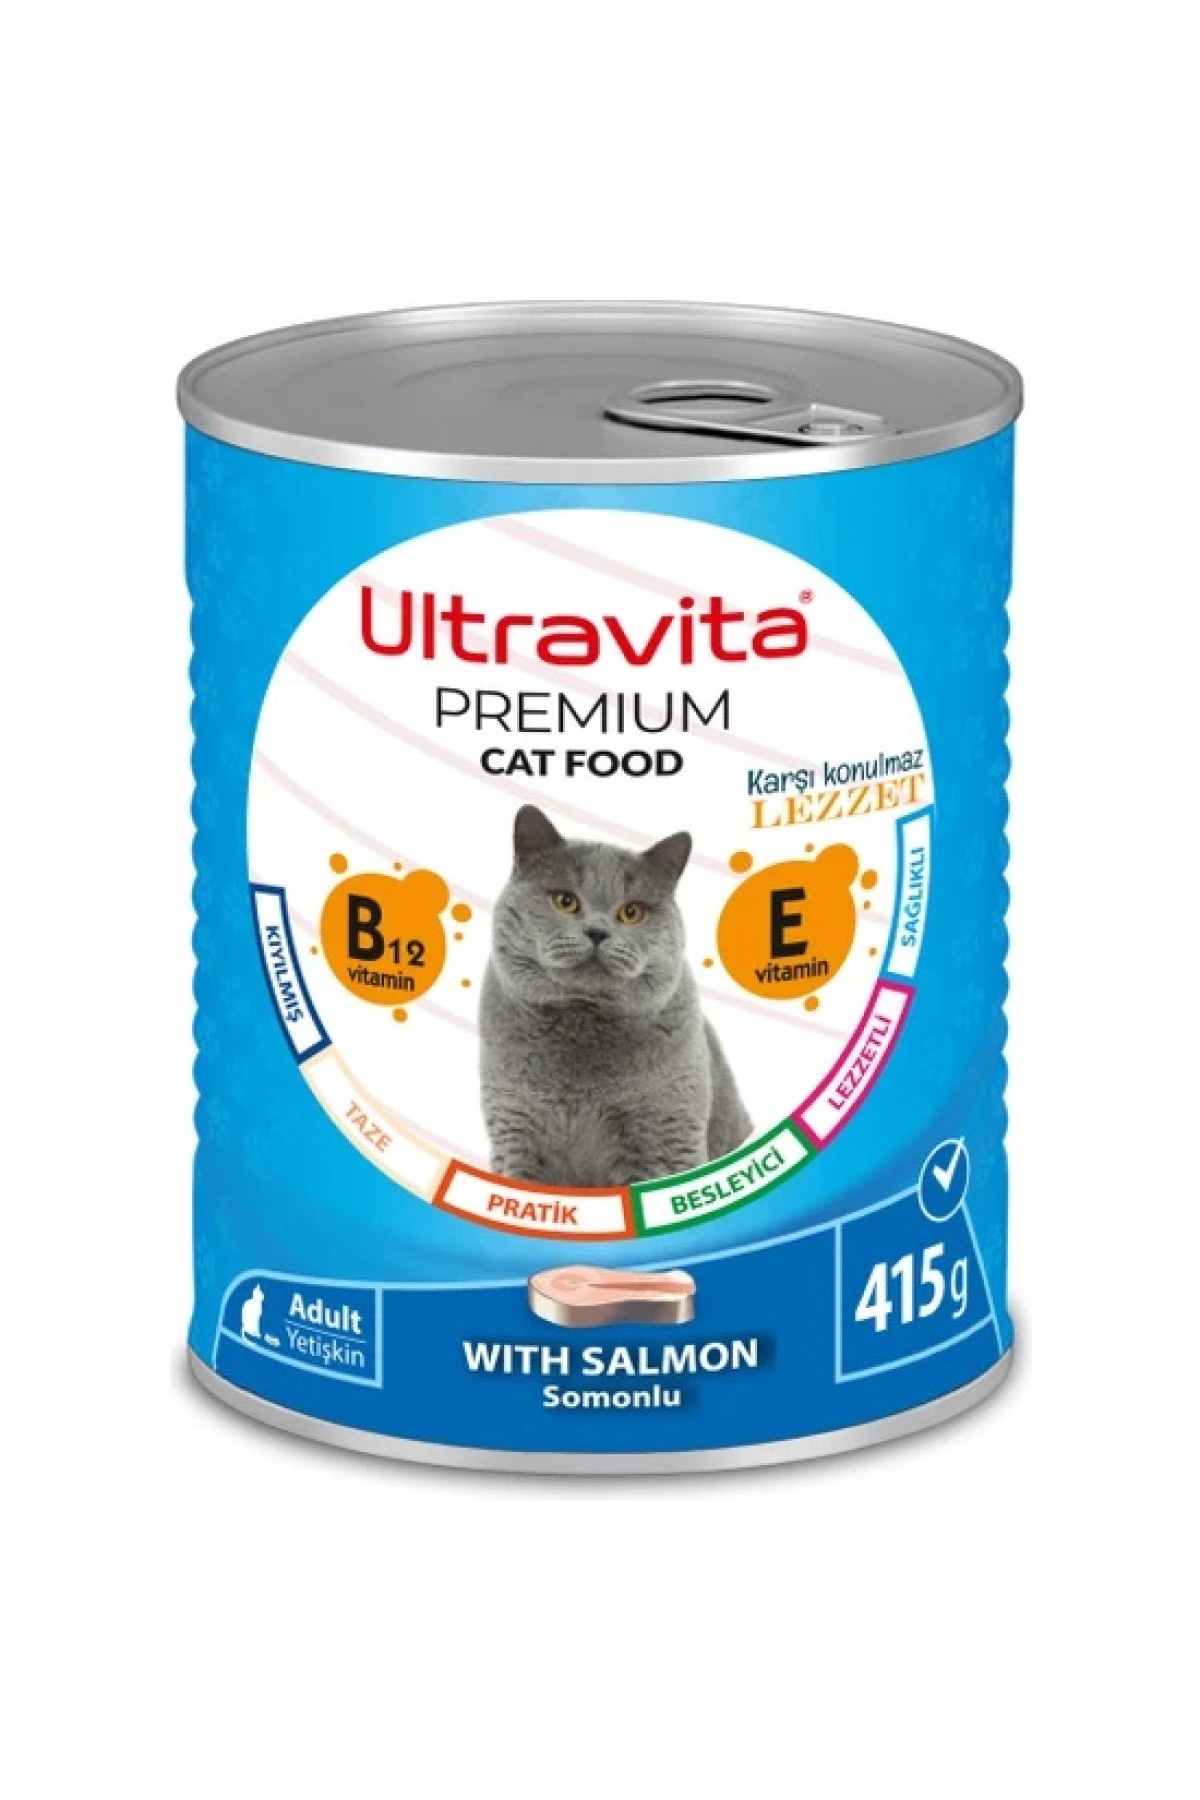 Ultravita Premium Yüksek Proteinli Balık Etli Konserve Yaş Kedi Maması 415GRX24 Adet